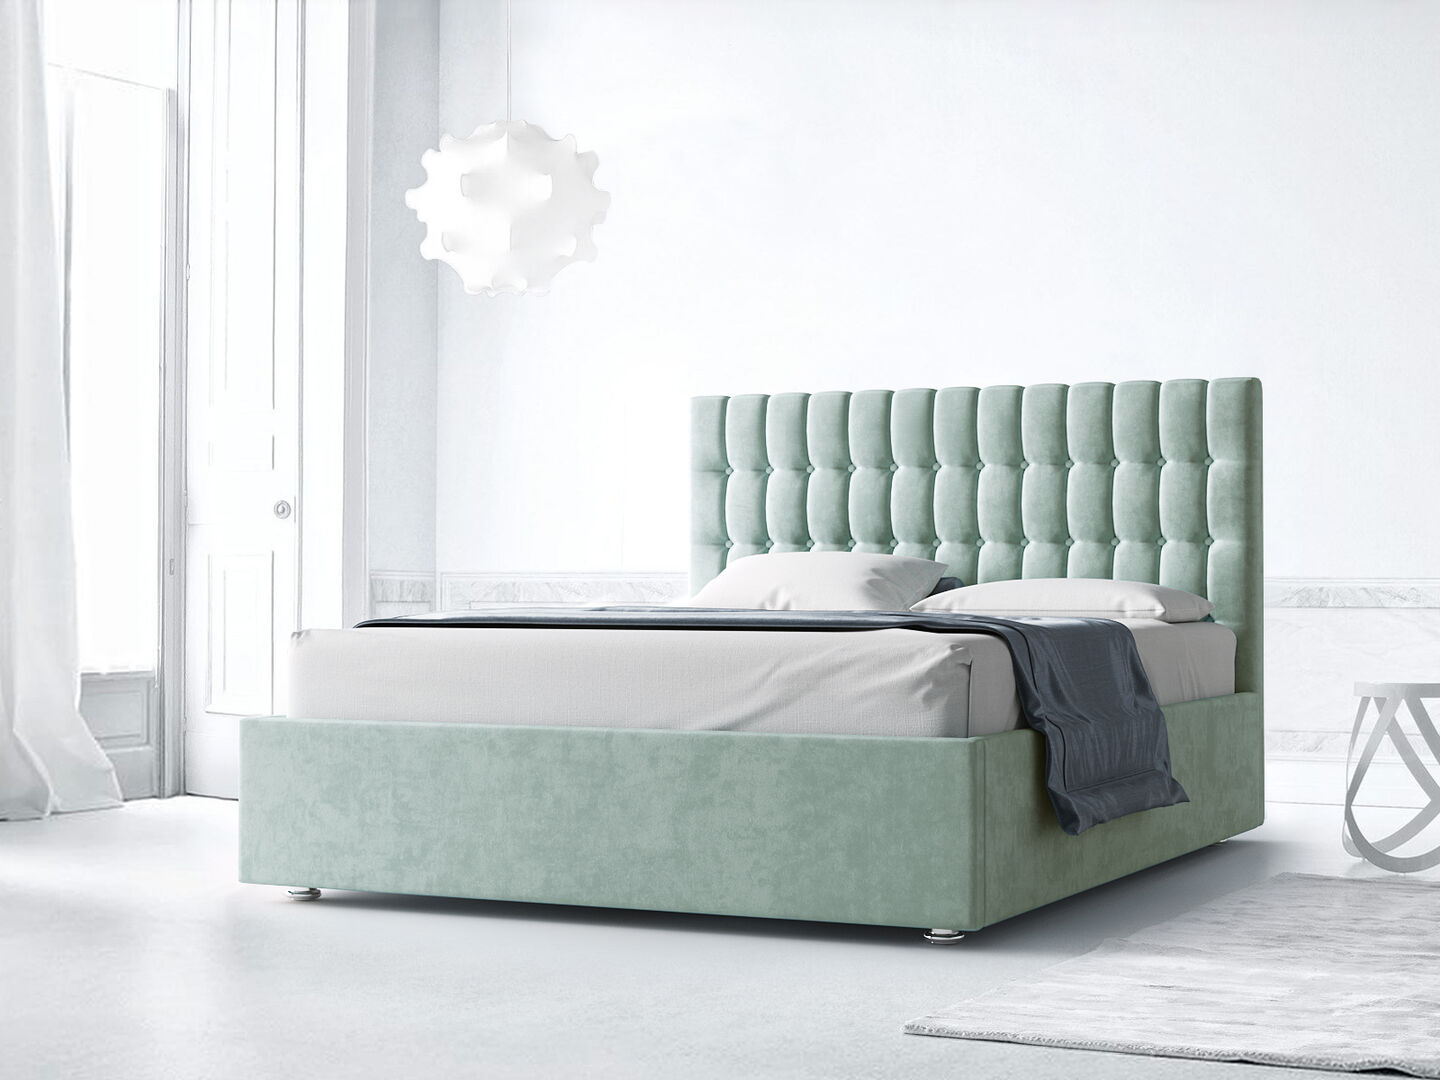 Кровать двуспальная с мягкой обивкой фабрики Стиль Эльмирия 140